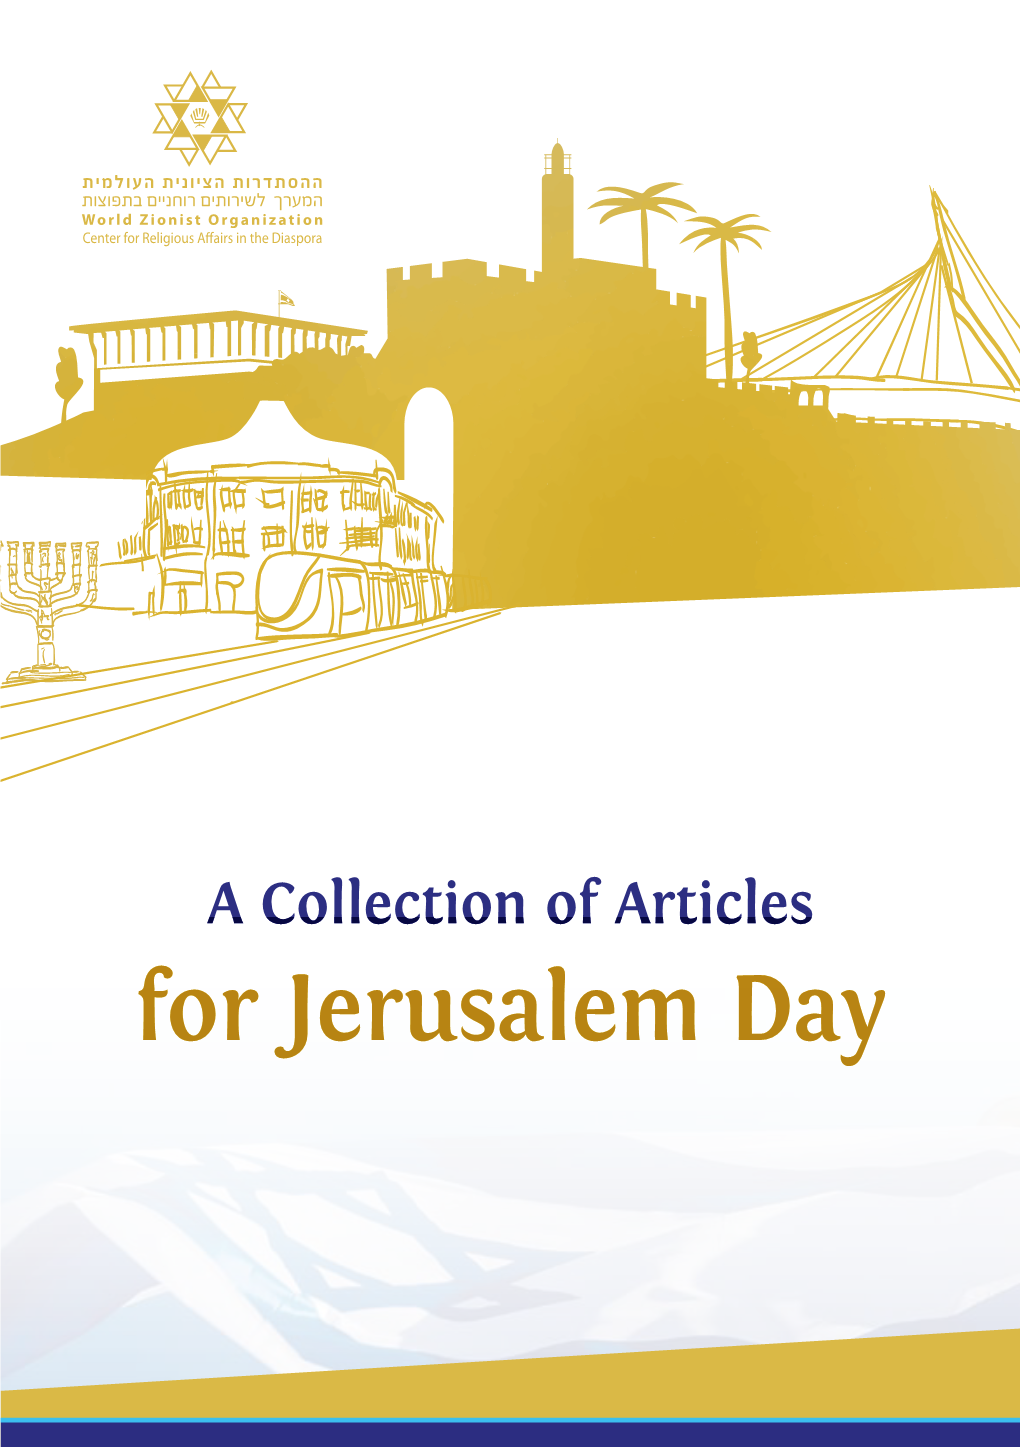 For Jerusalem Day 2 Jerusalem Day 3